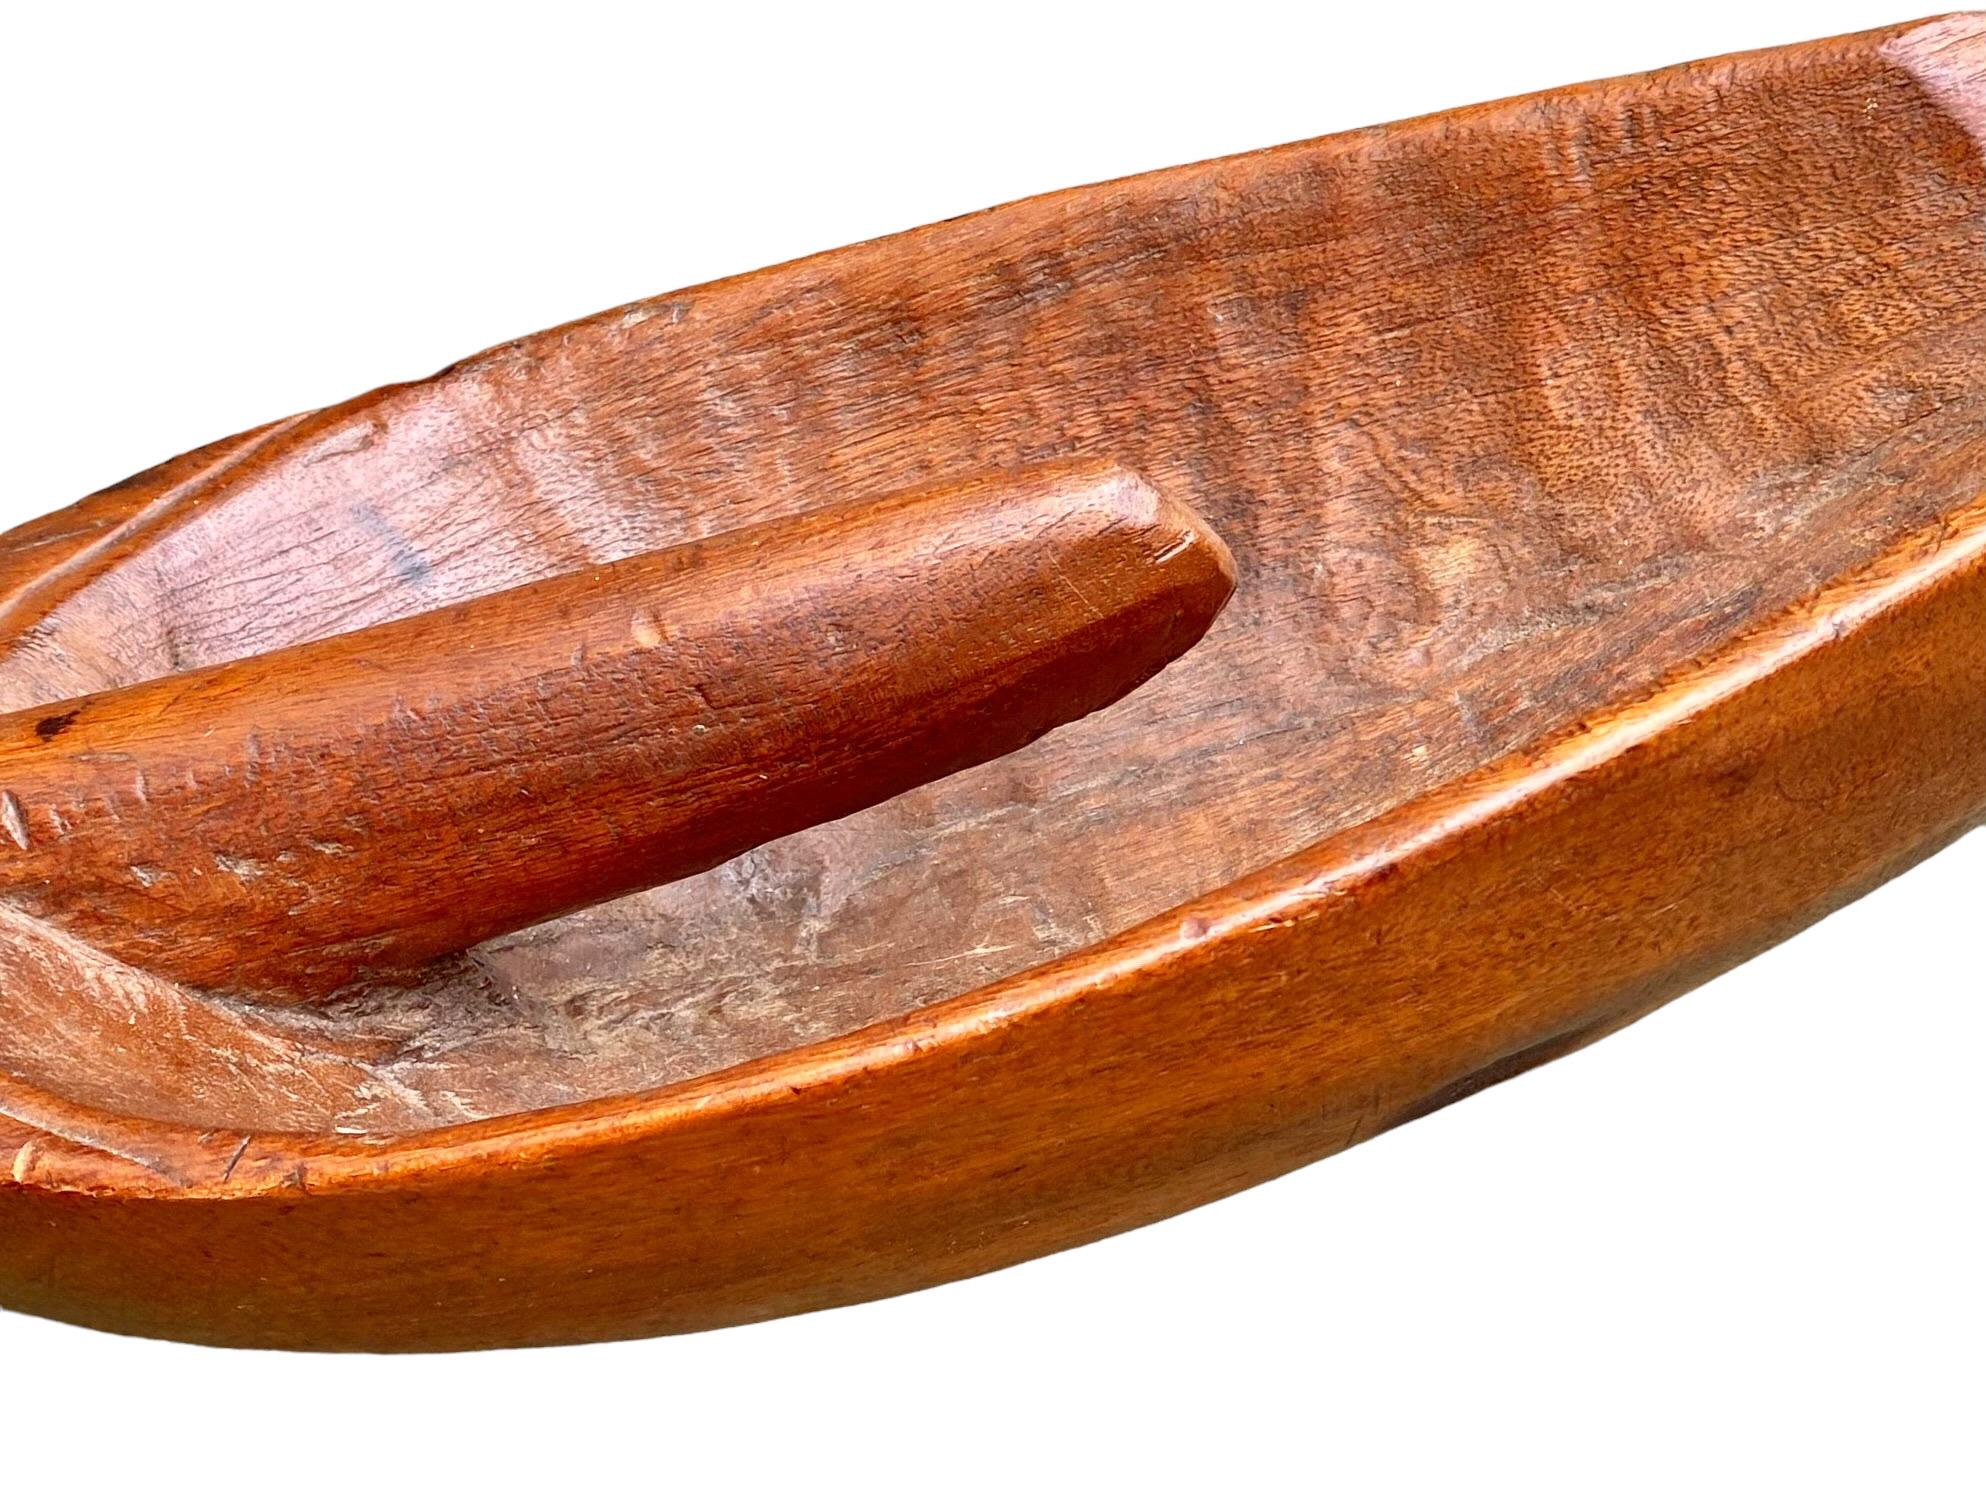 Pleine de caractère et riche en histoire, cette pelle à grain antique en bois fruitier de style provincial français était autrefois simplement utilitaire et servait à pelleter l'avoine dans les sacs. Cette pelle en bois fruitier a une belle finition